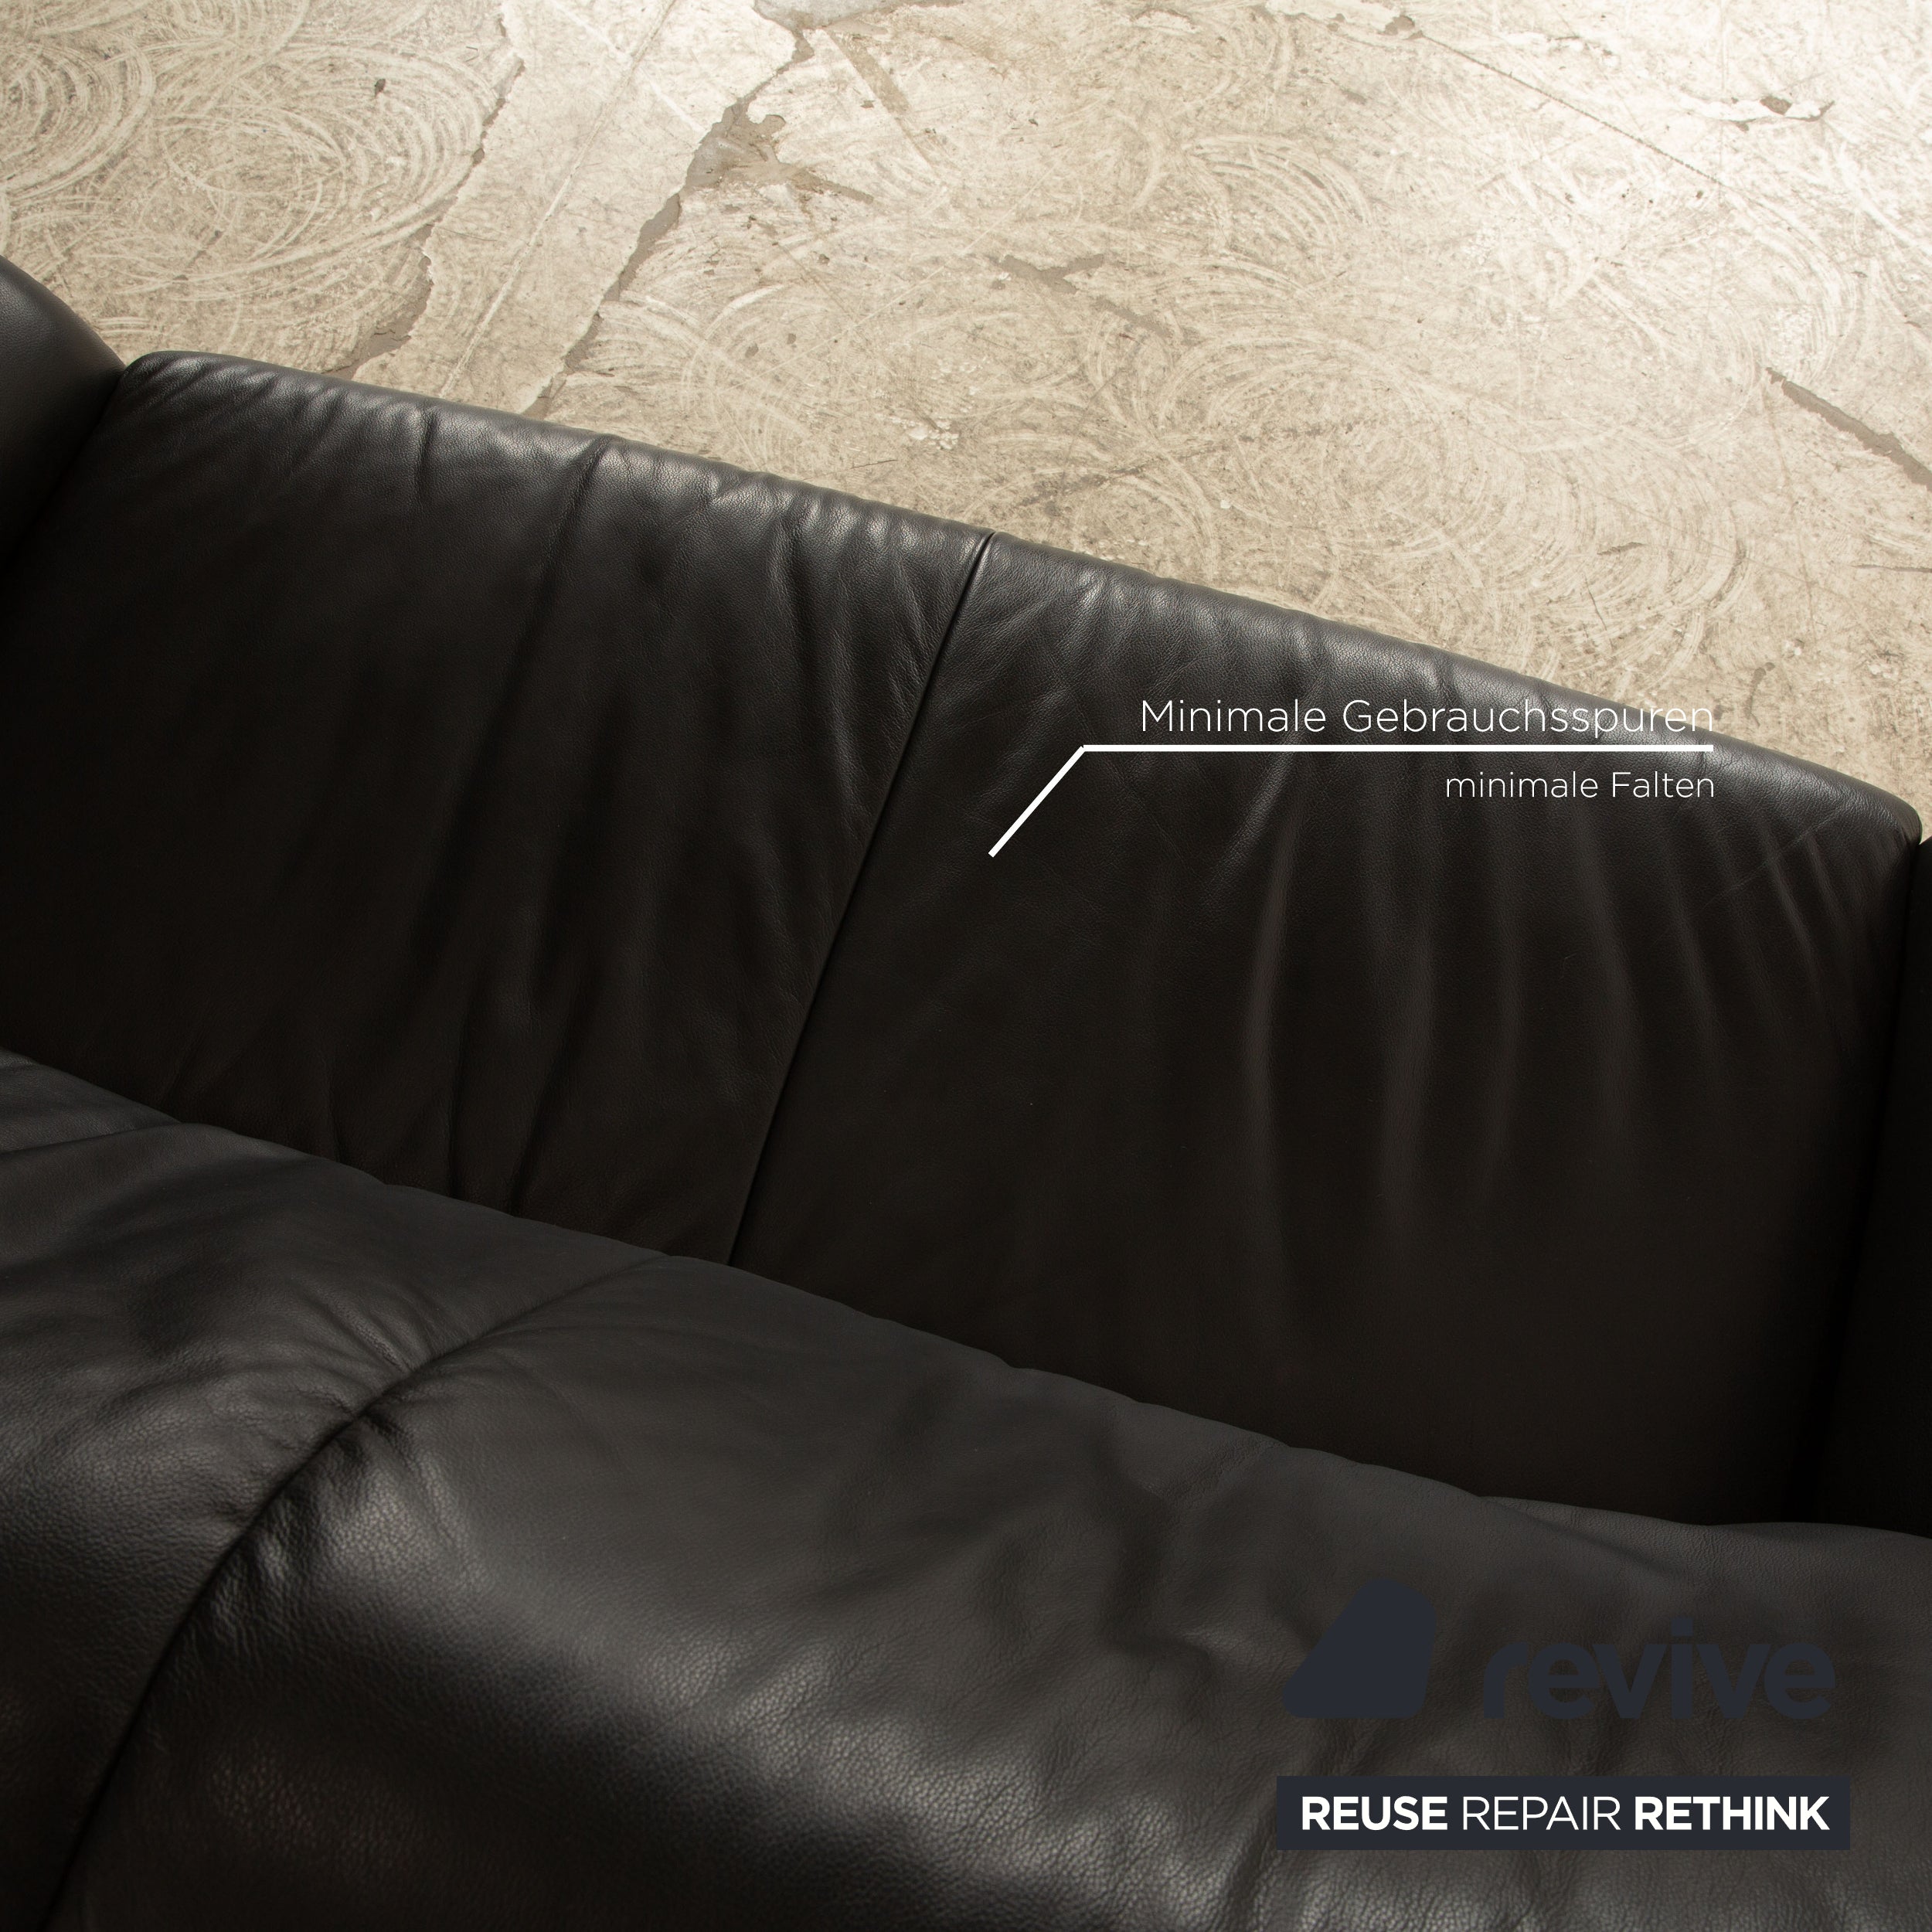 Musterring Leder Zweisitzer Schwarz Sofa Couch